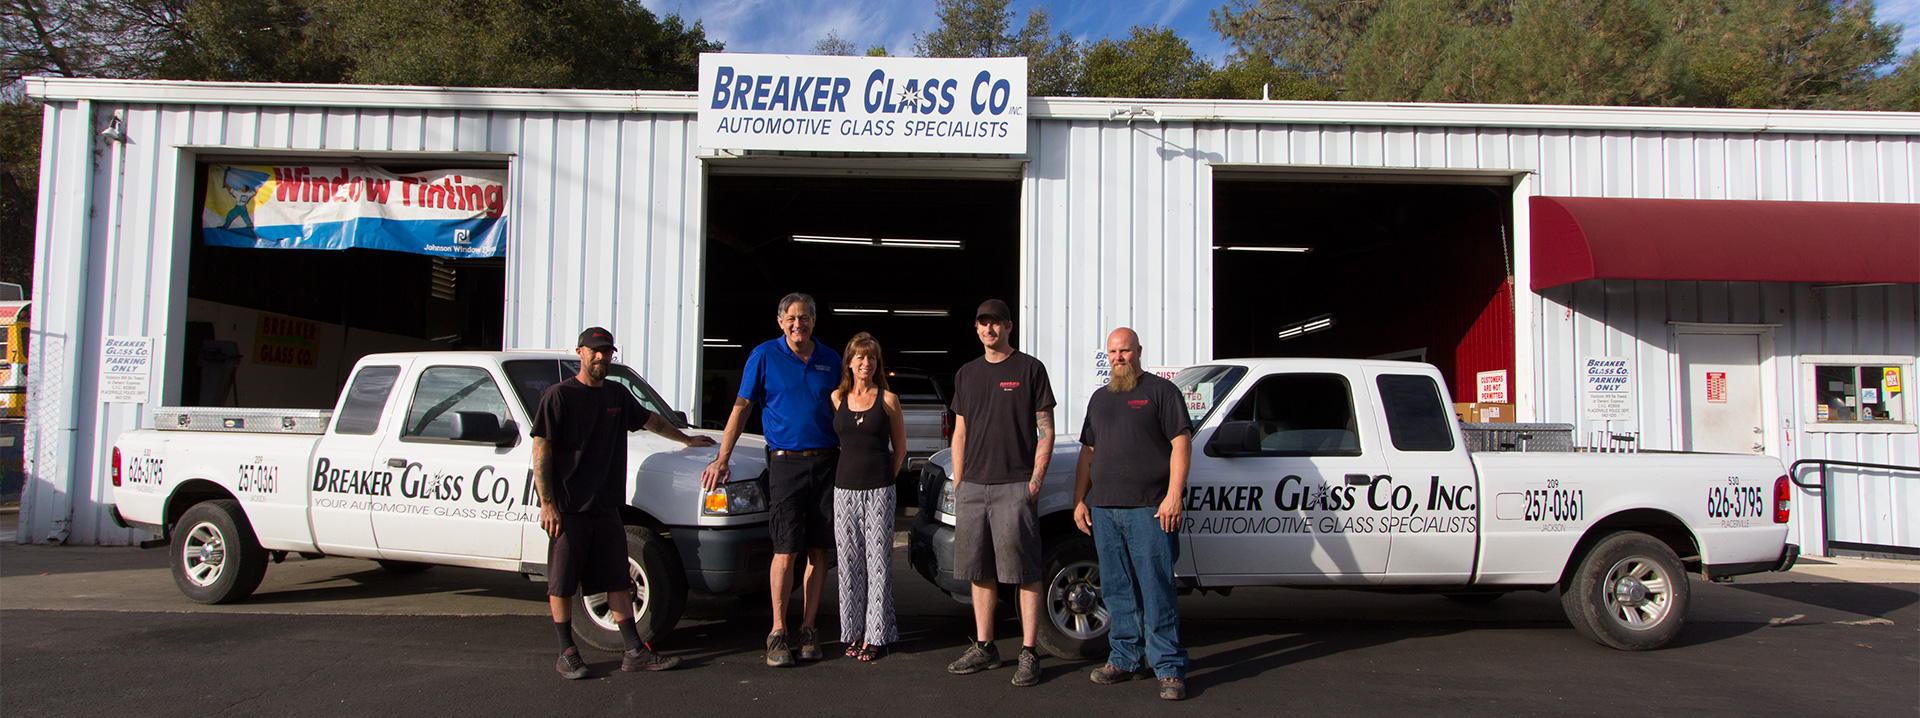 Breaker Glass Co Inc